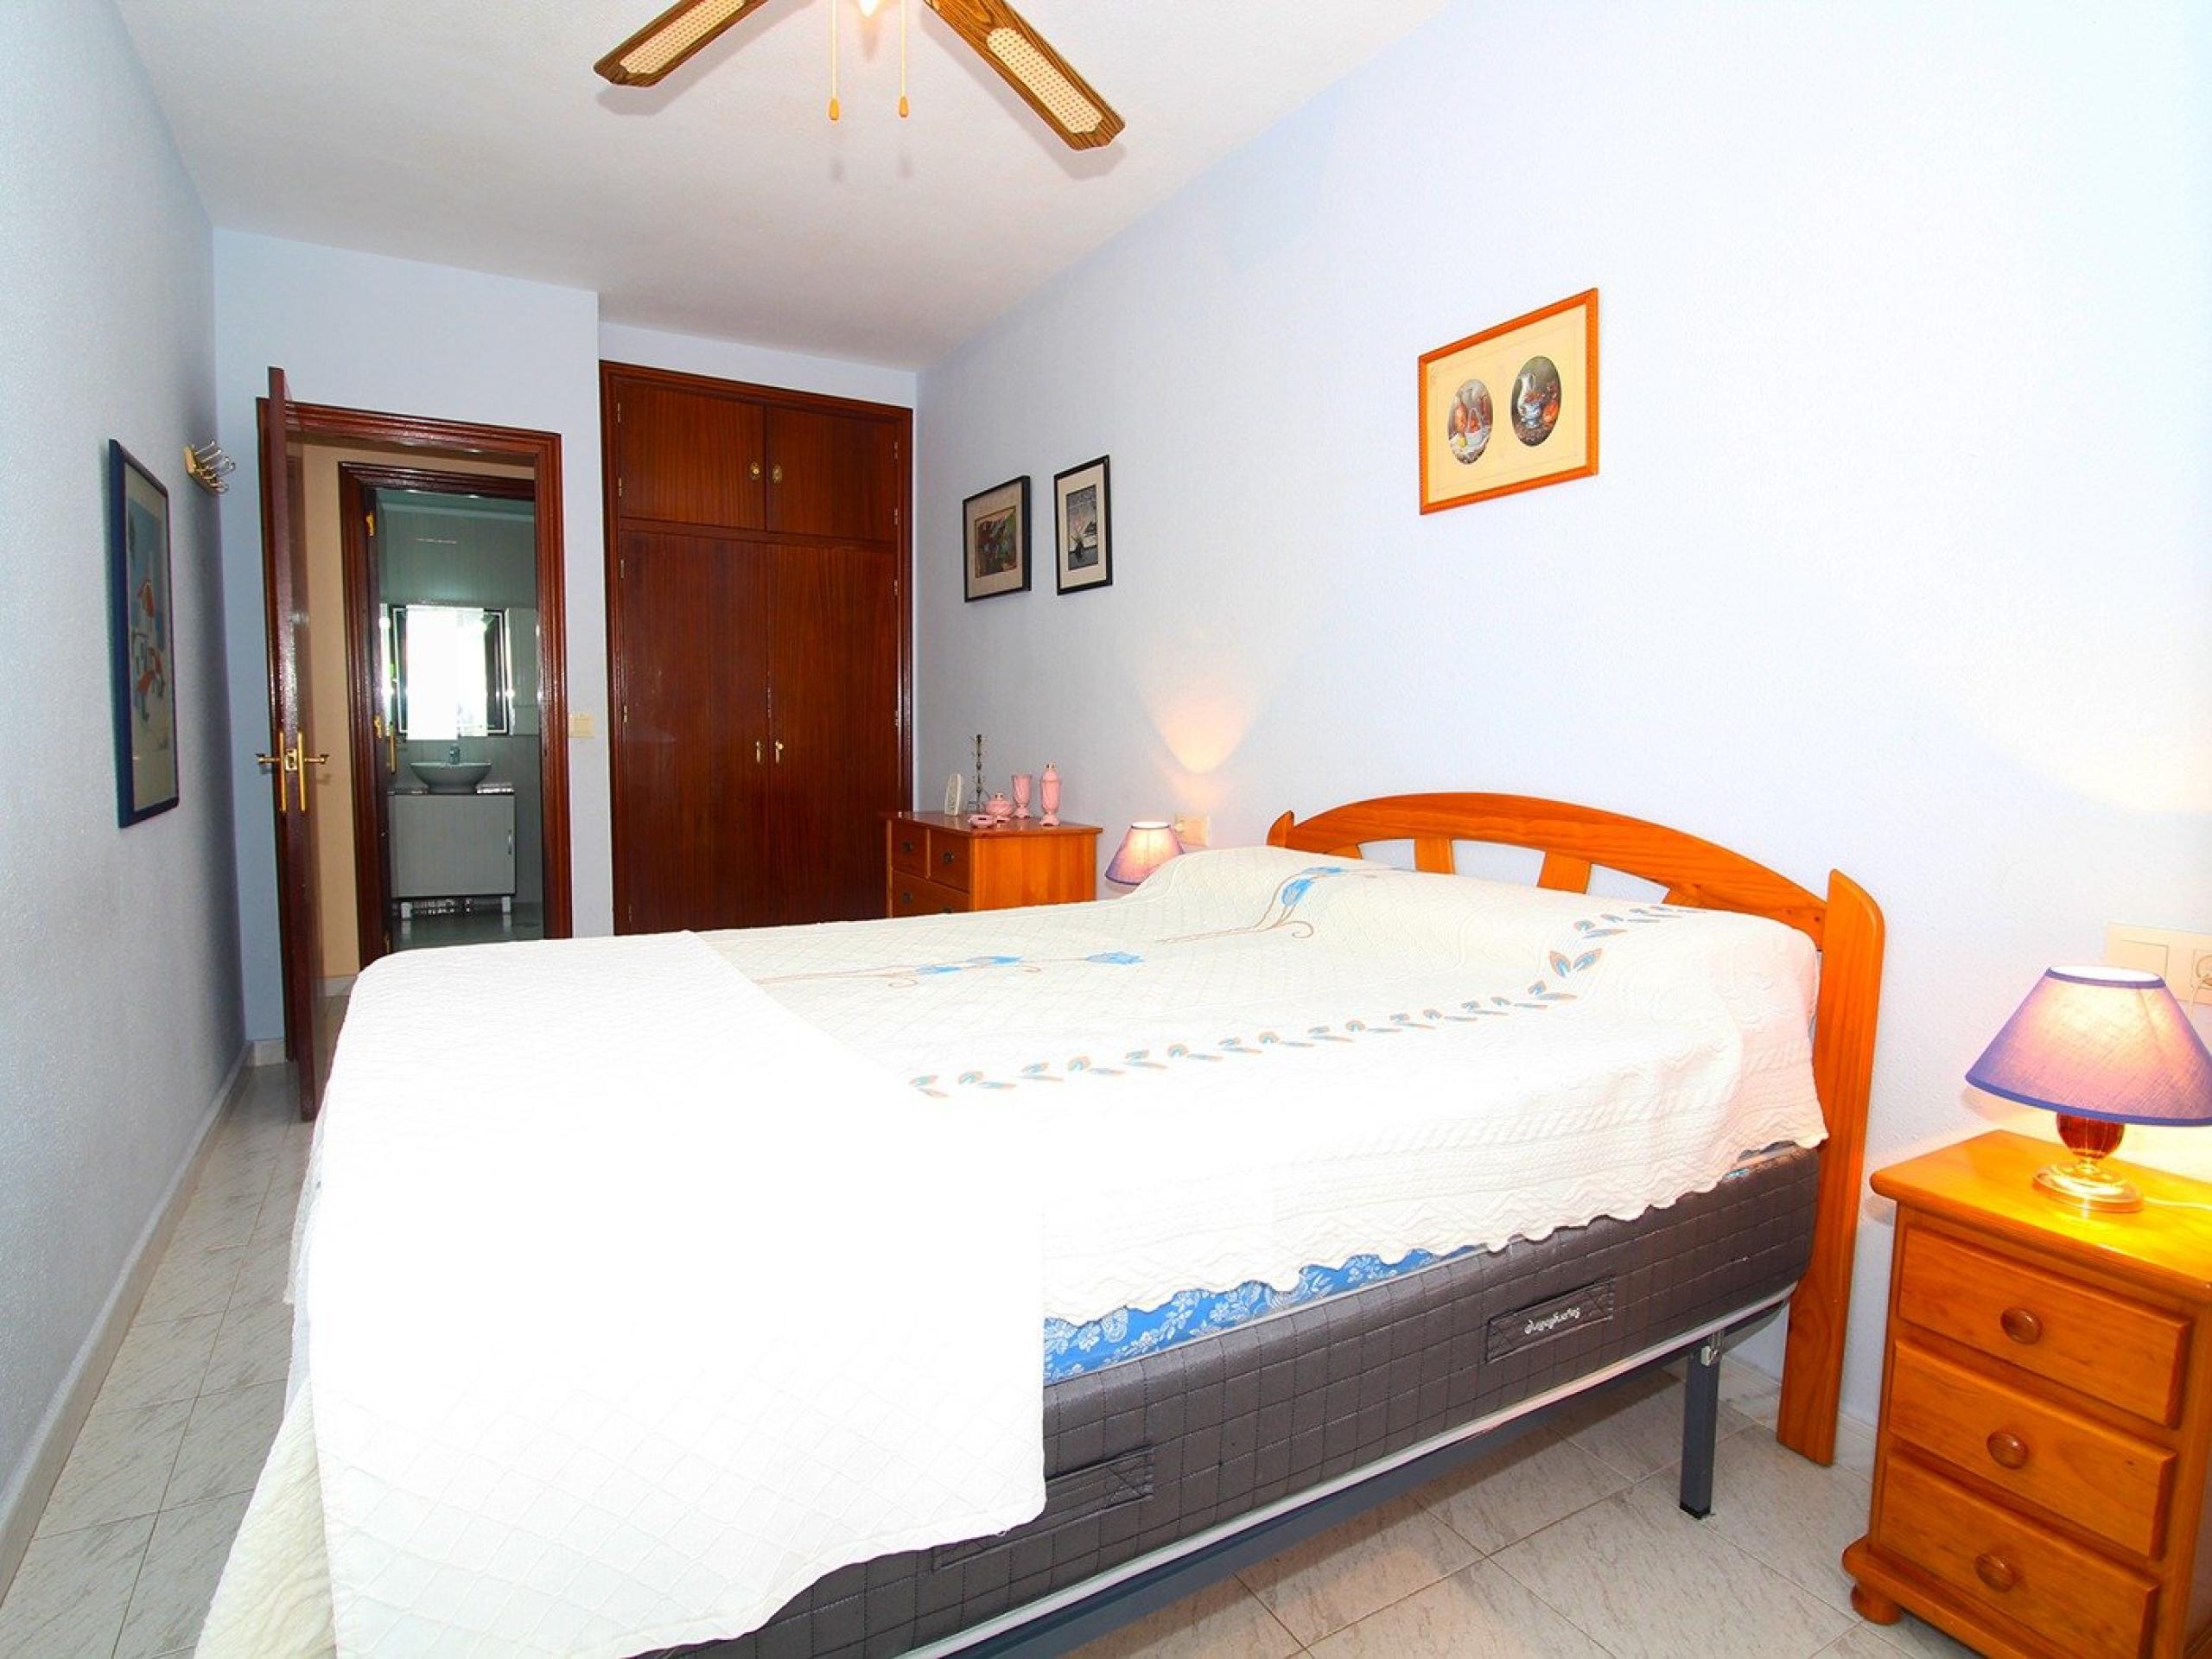 Appartement, 1 chambre à coucher, à environ 15 minutes à pied de la belle plage de La Mata